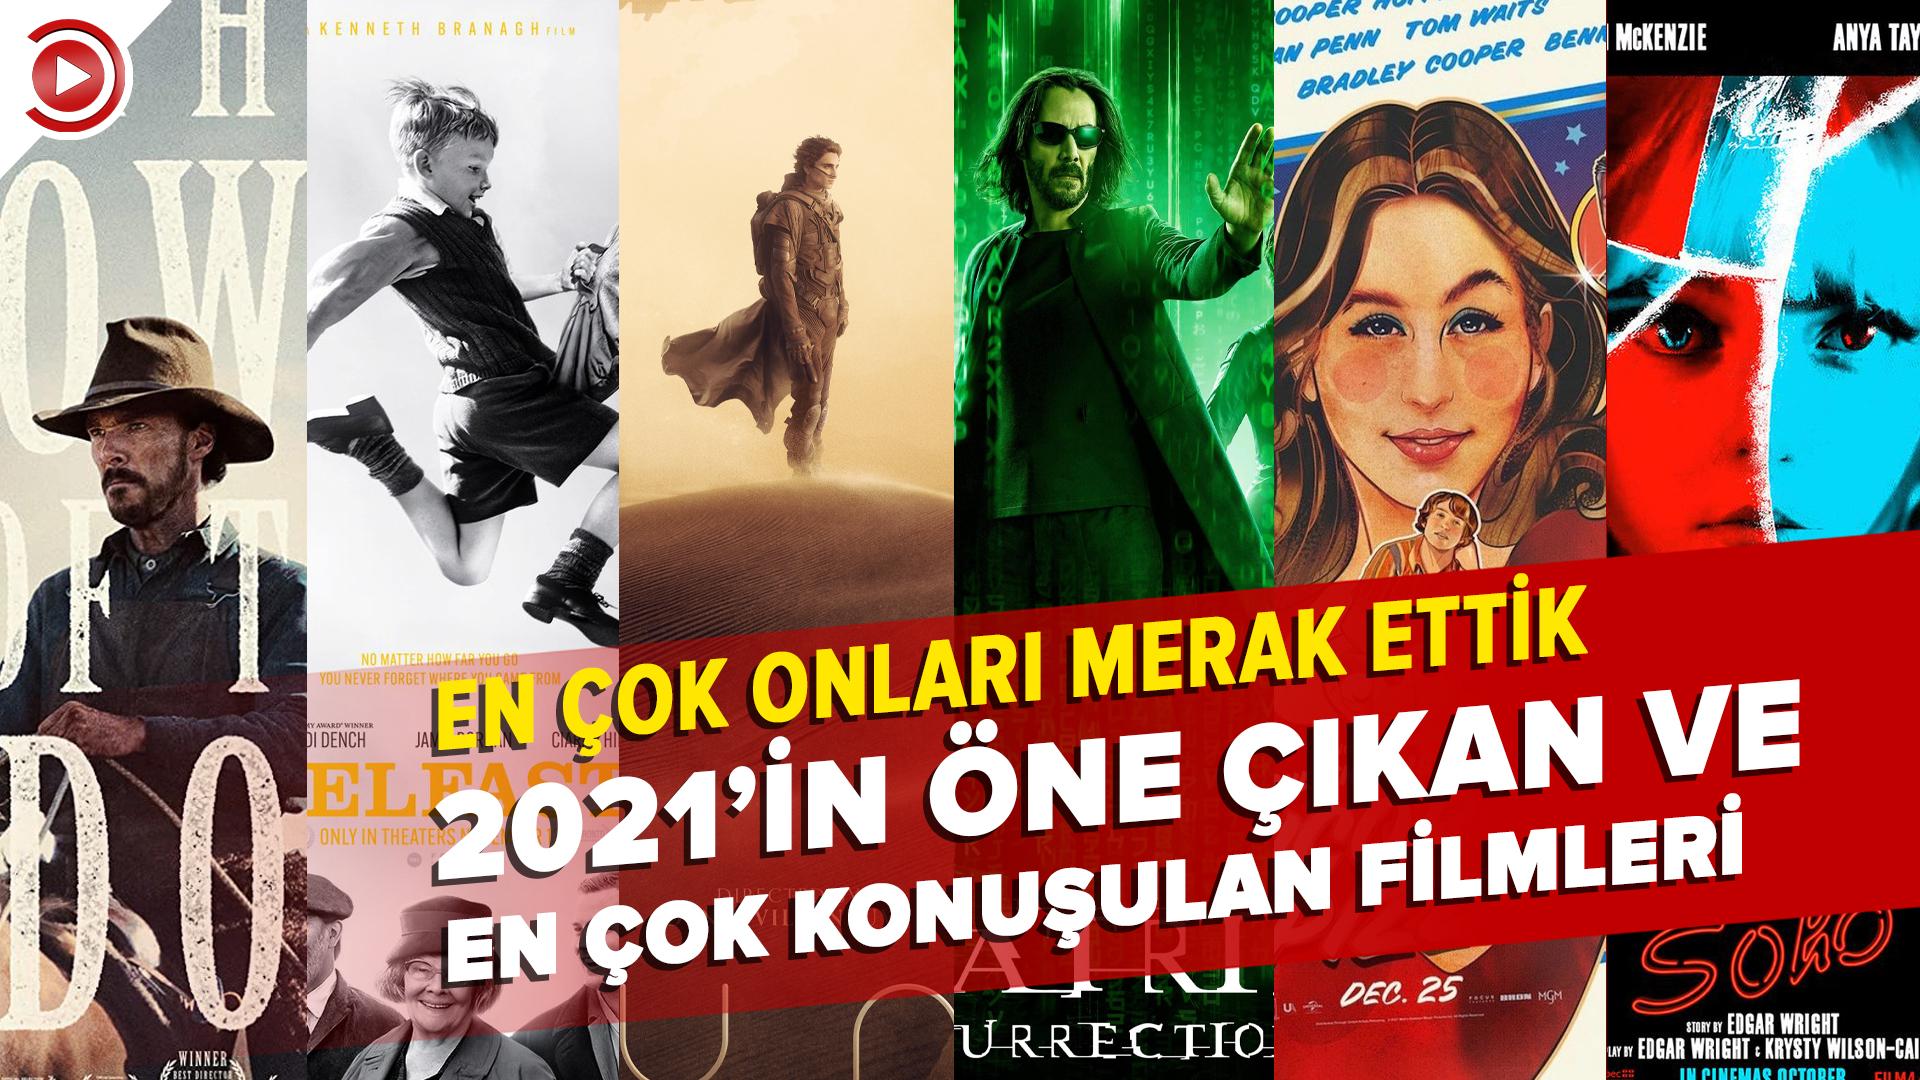 2021'in öne çıkan ve en çok konuşulan filmleri